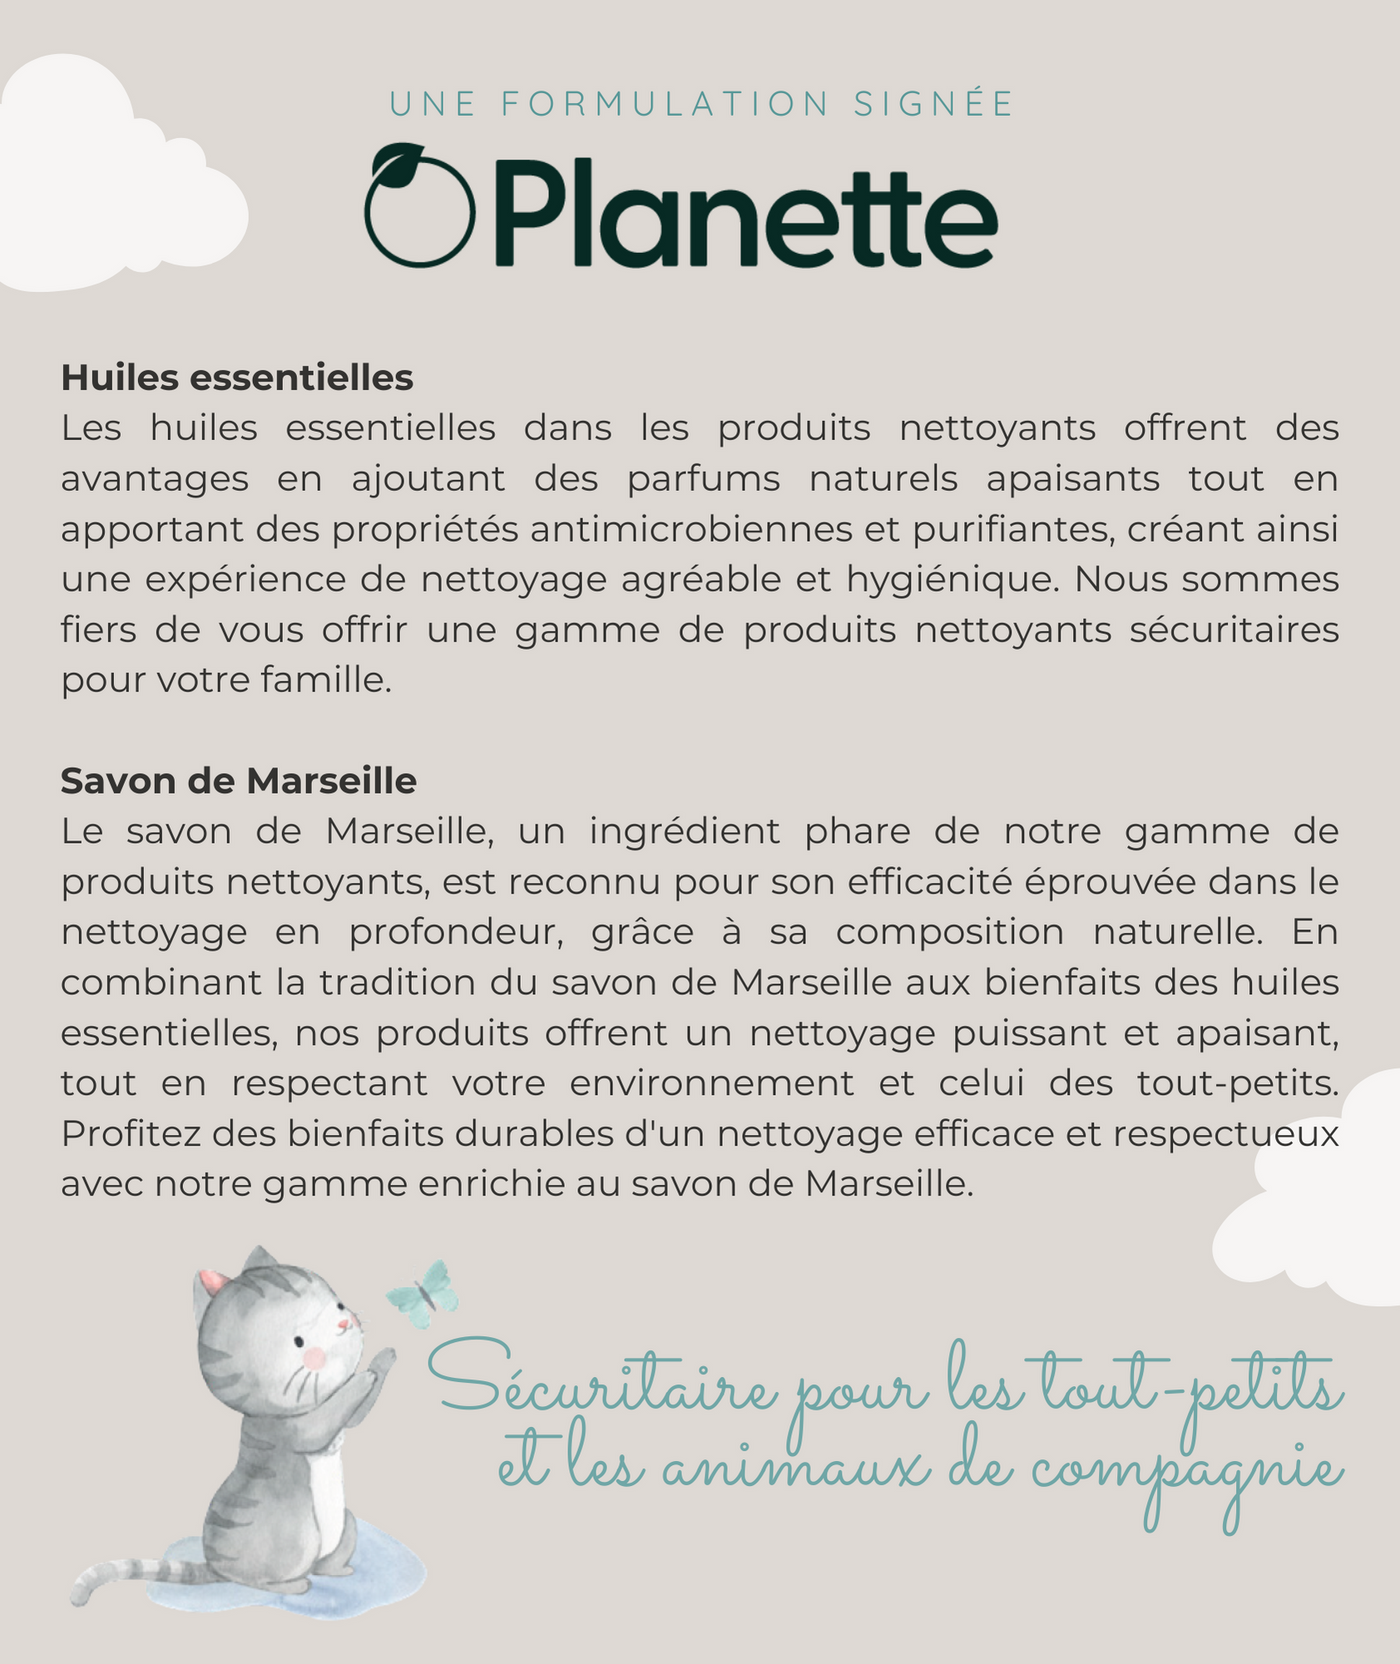 Gamme nettoyante - Nettoyant tout usage jouets & accessoires - 500 ml - Boite de 8 - Veille sur toi & Planette